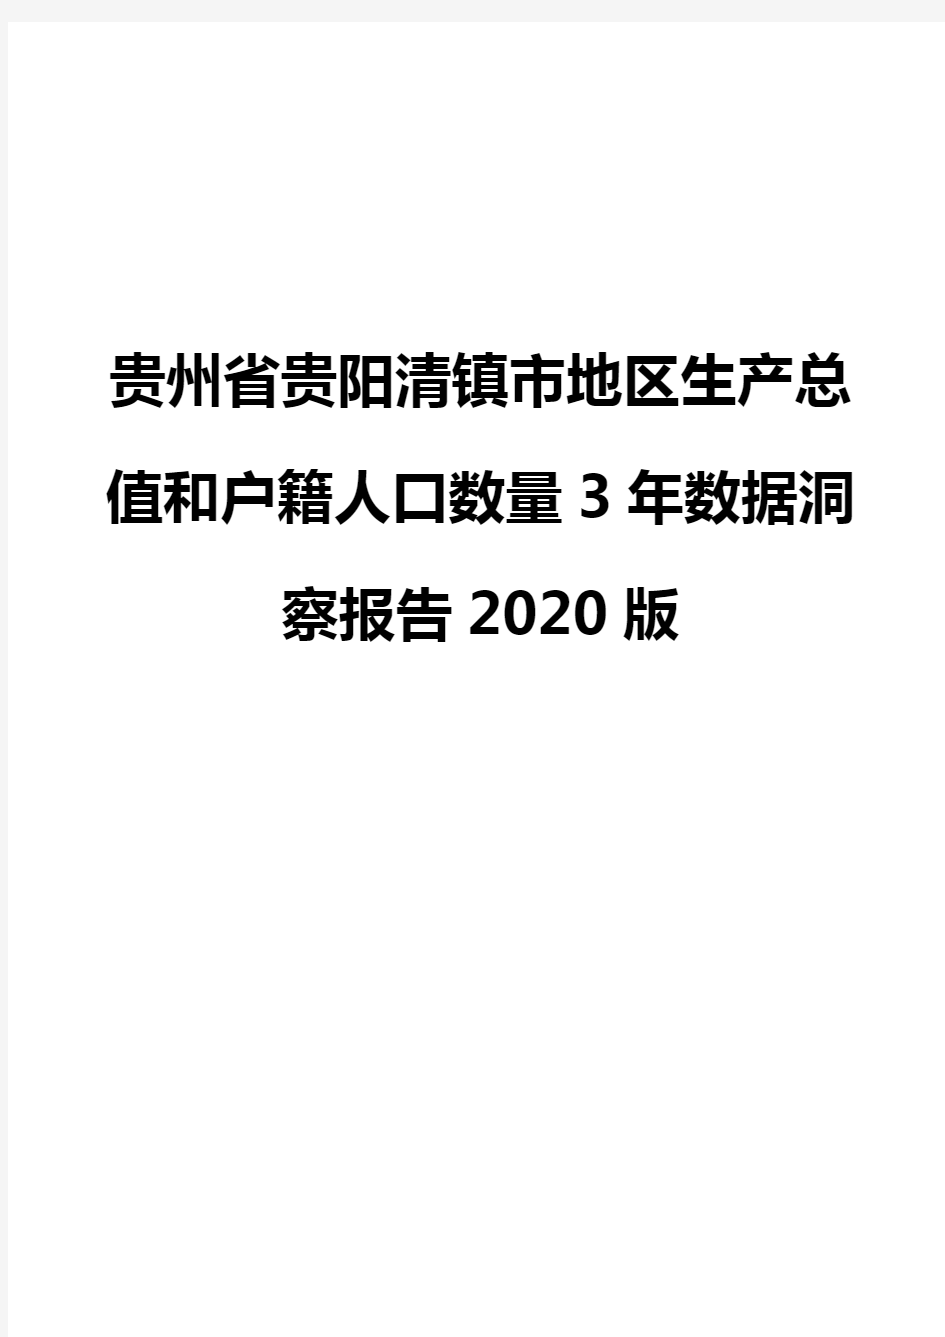 贵州省贵阳清镇市地区生产总值和户籍人口数量3年数据洞察报告2020版